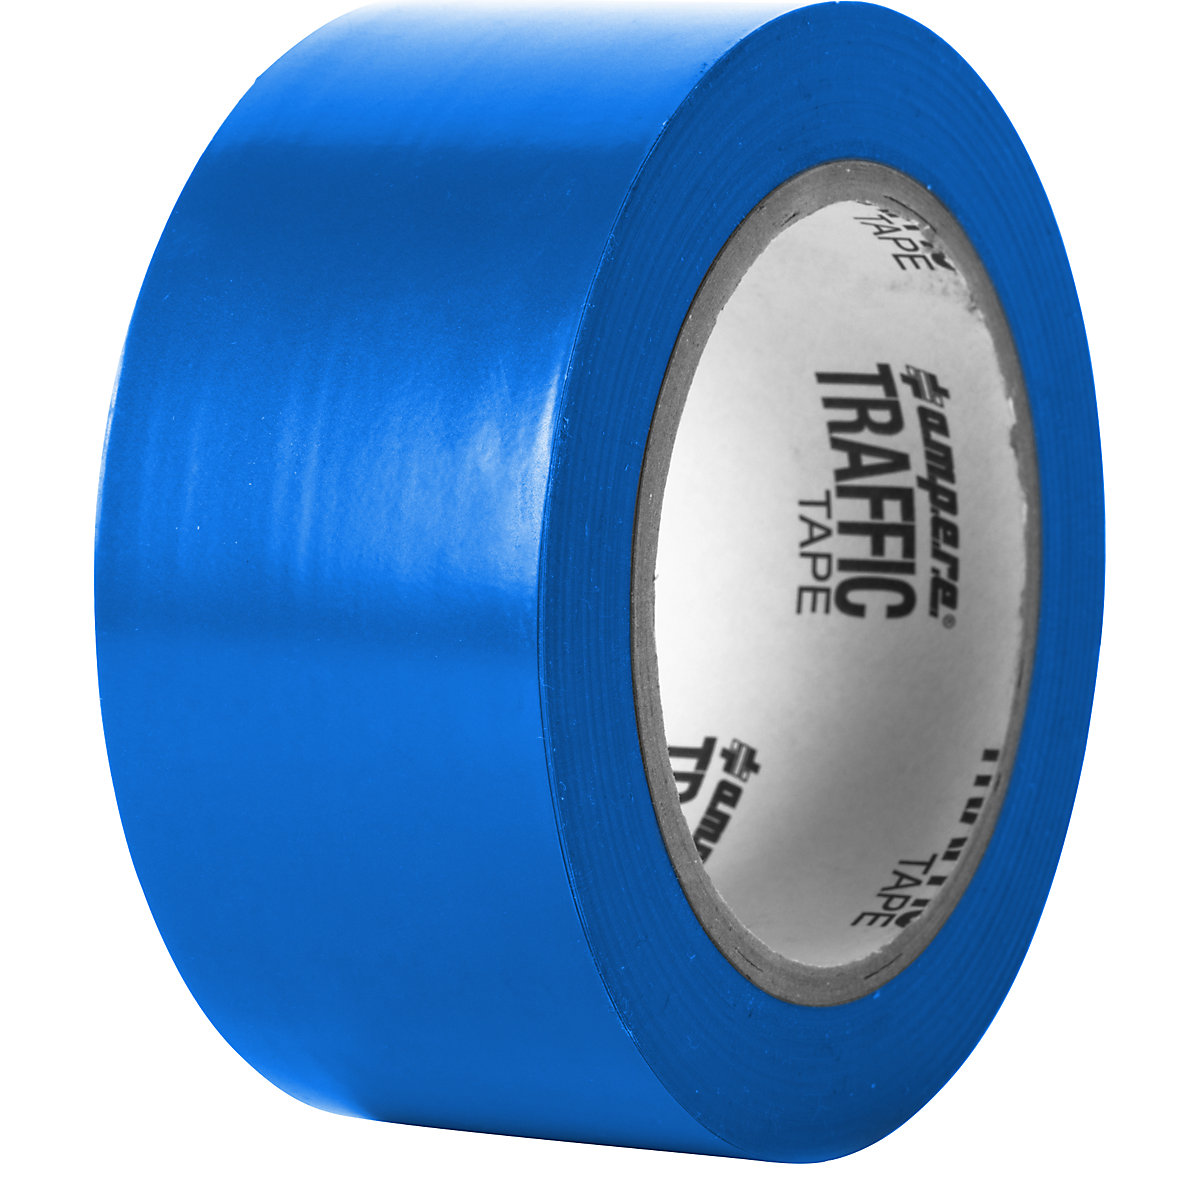 Podlahová označovacia páska – Ampere, šírka 50 mm, modrá-6